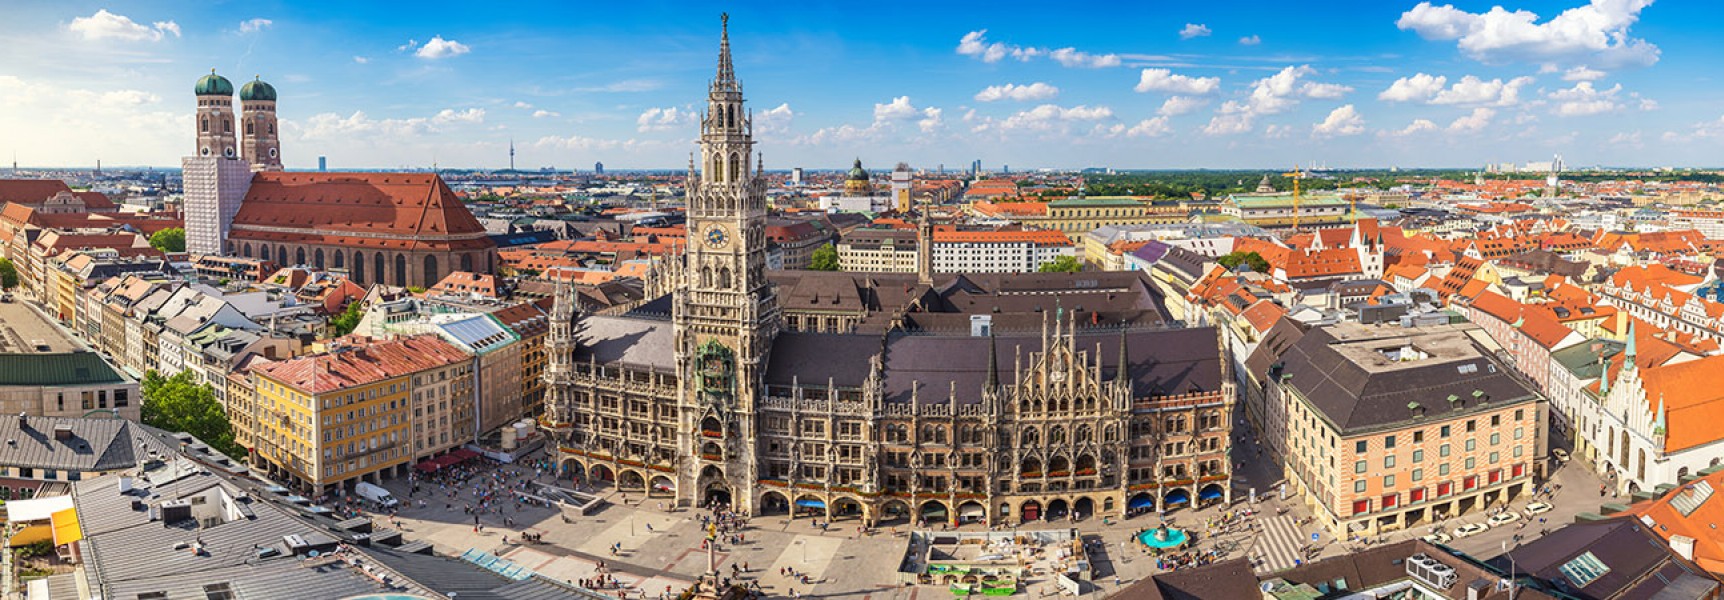 Μόναχο: Η «Κοσμοπολίτικη Πόλη με Καρδιά»